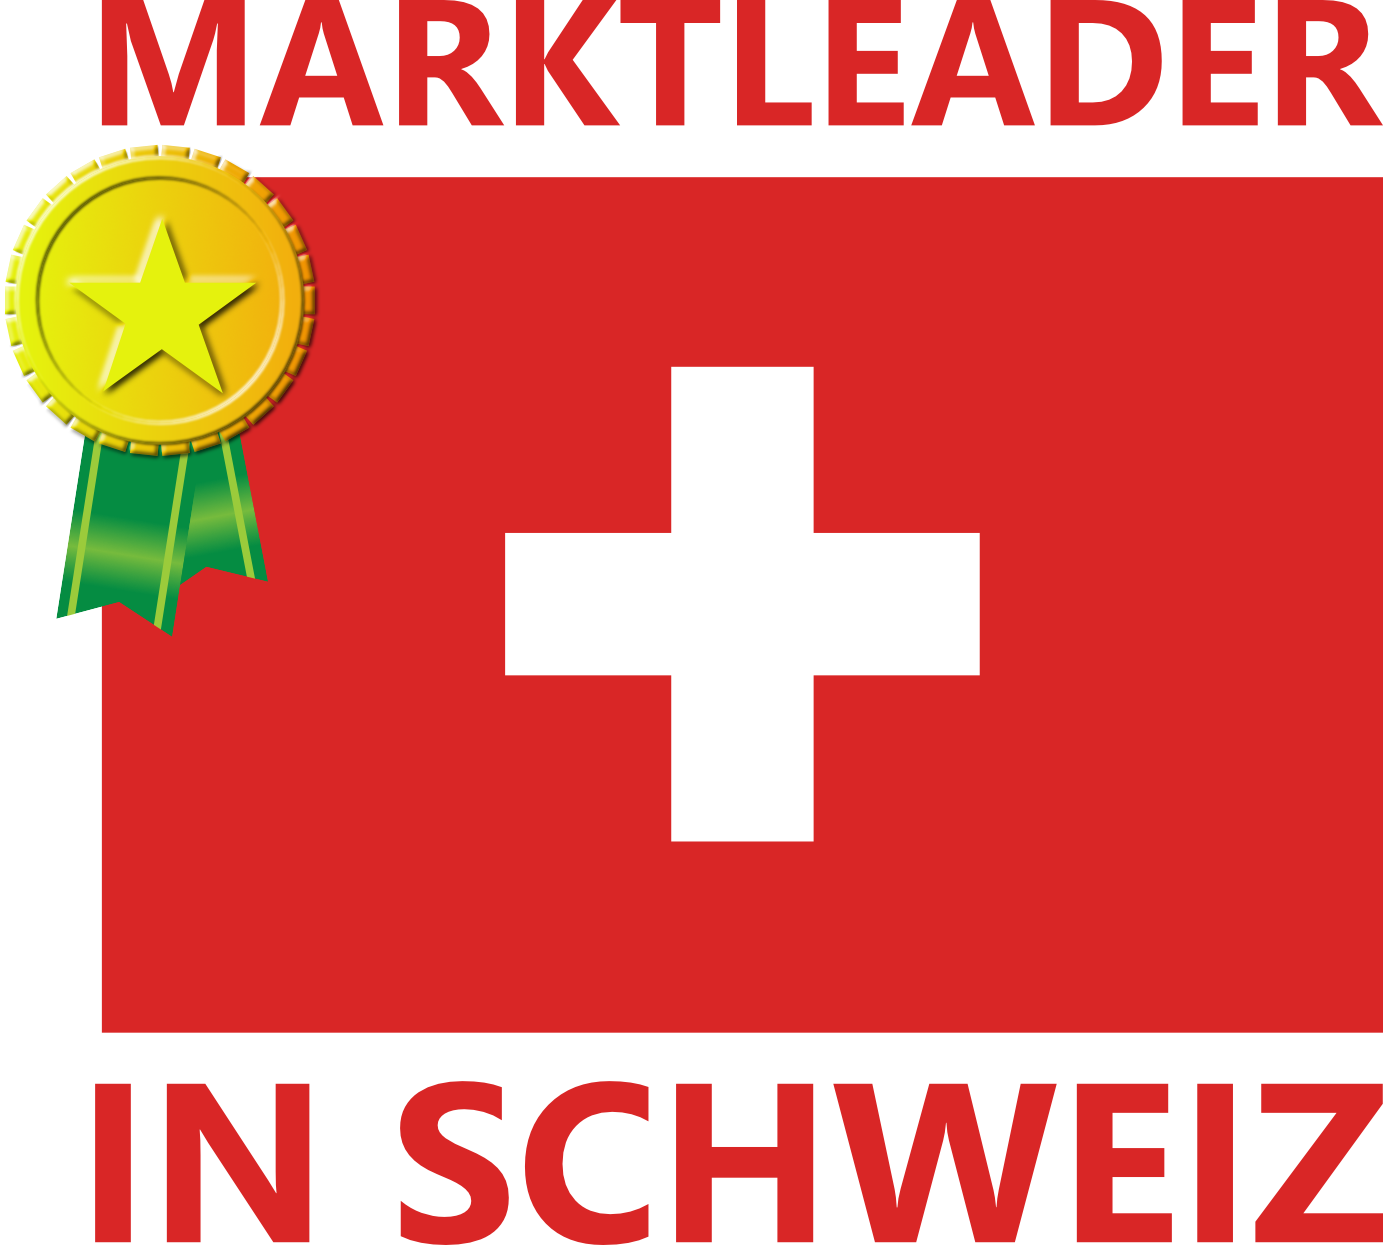 schweiz_marktleader_02-1.png